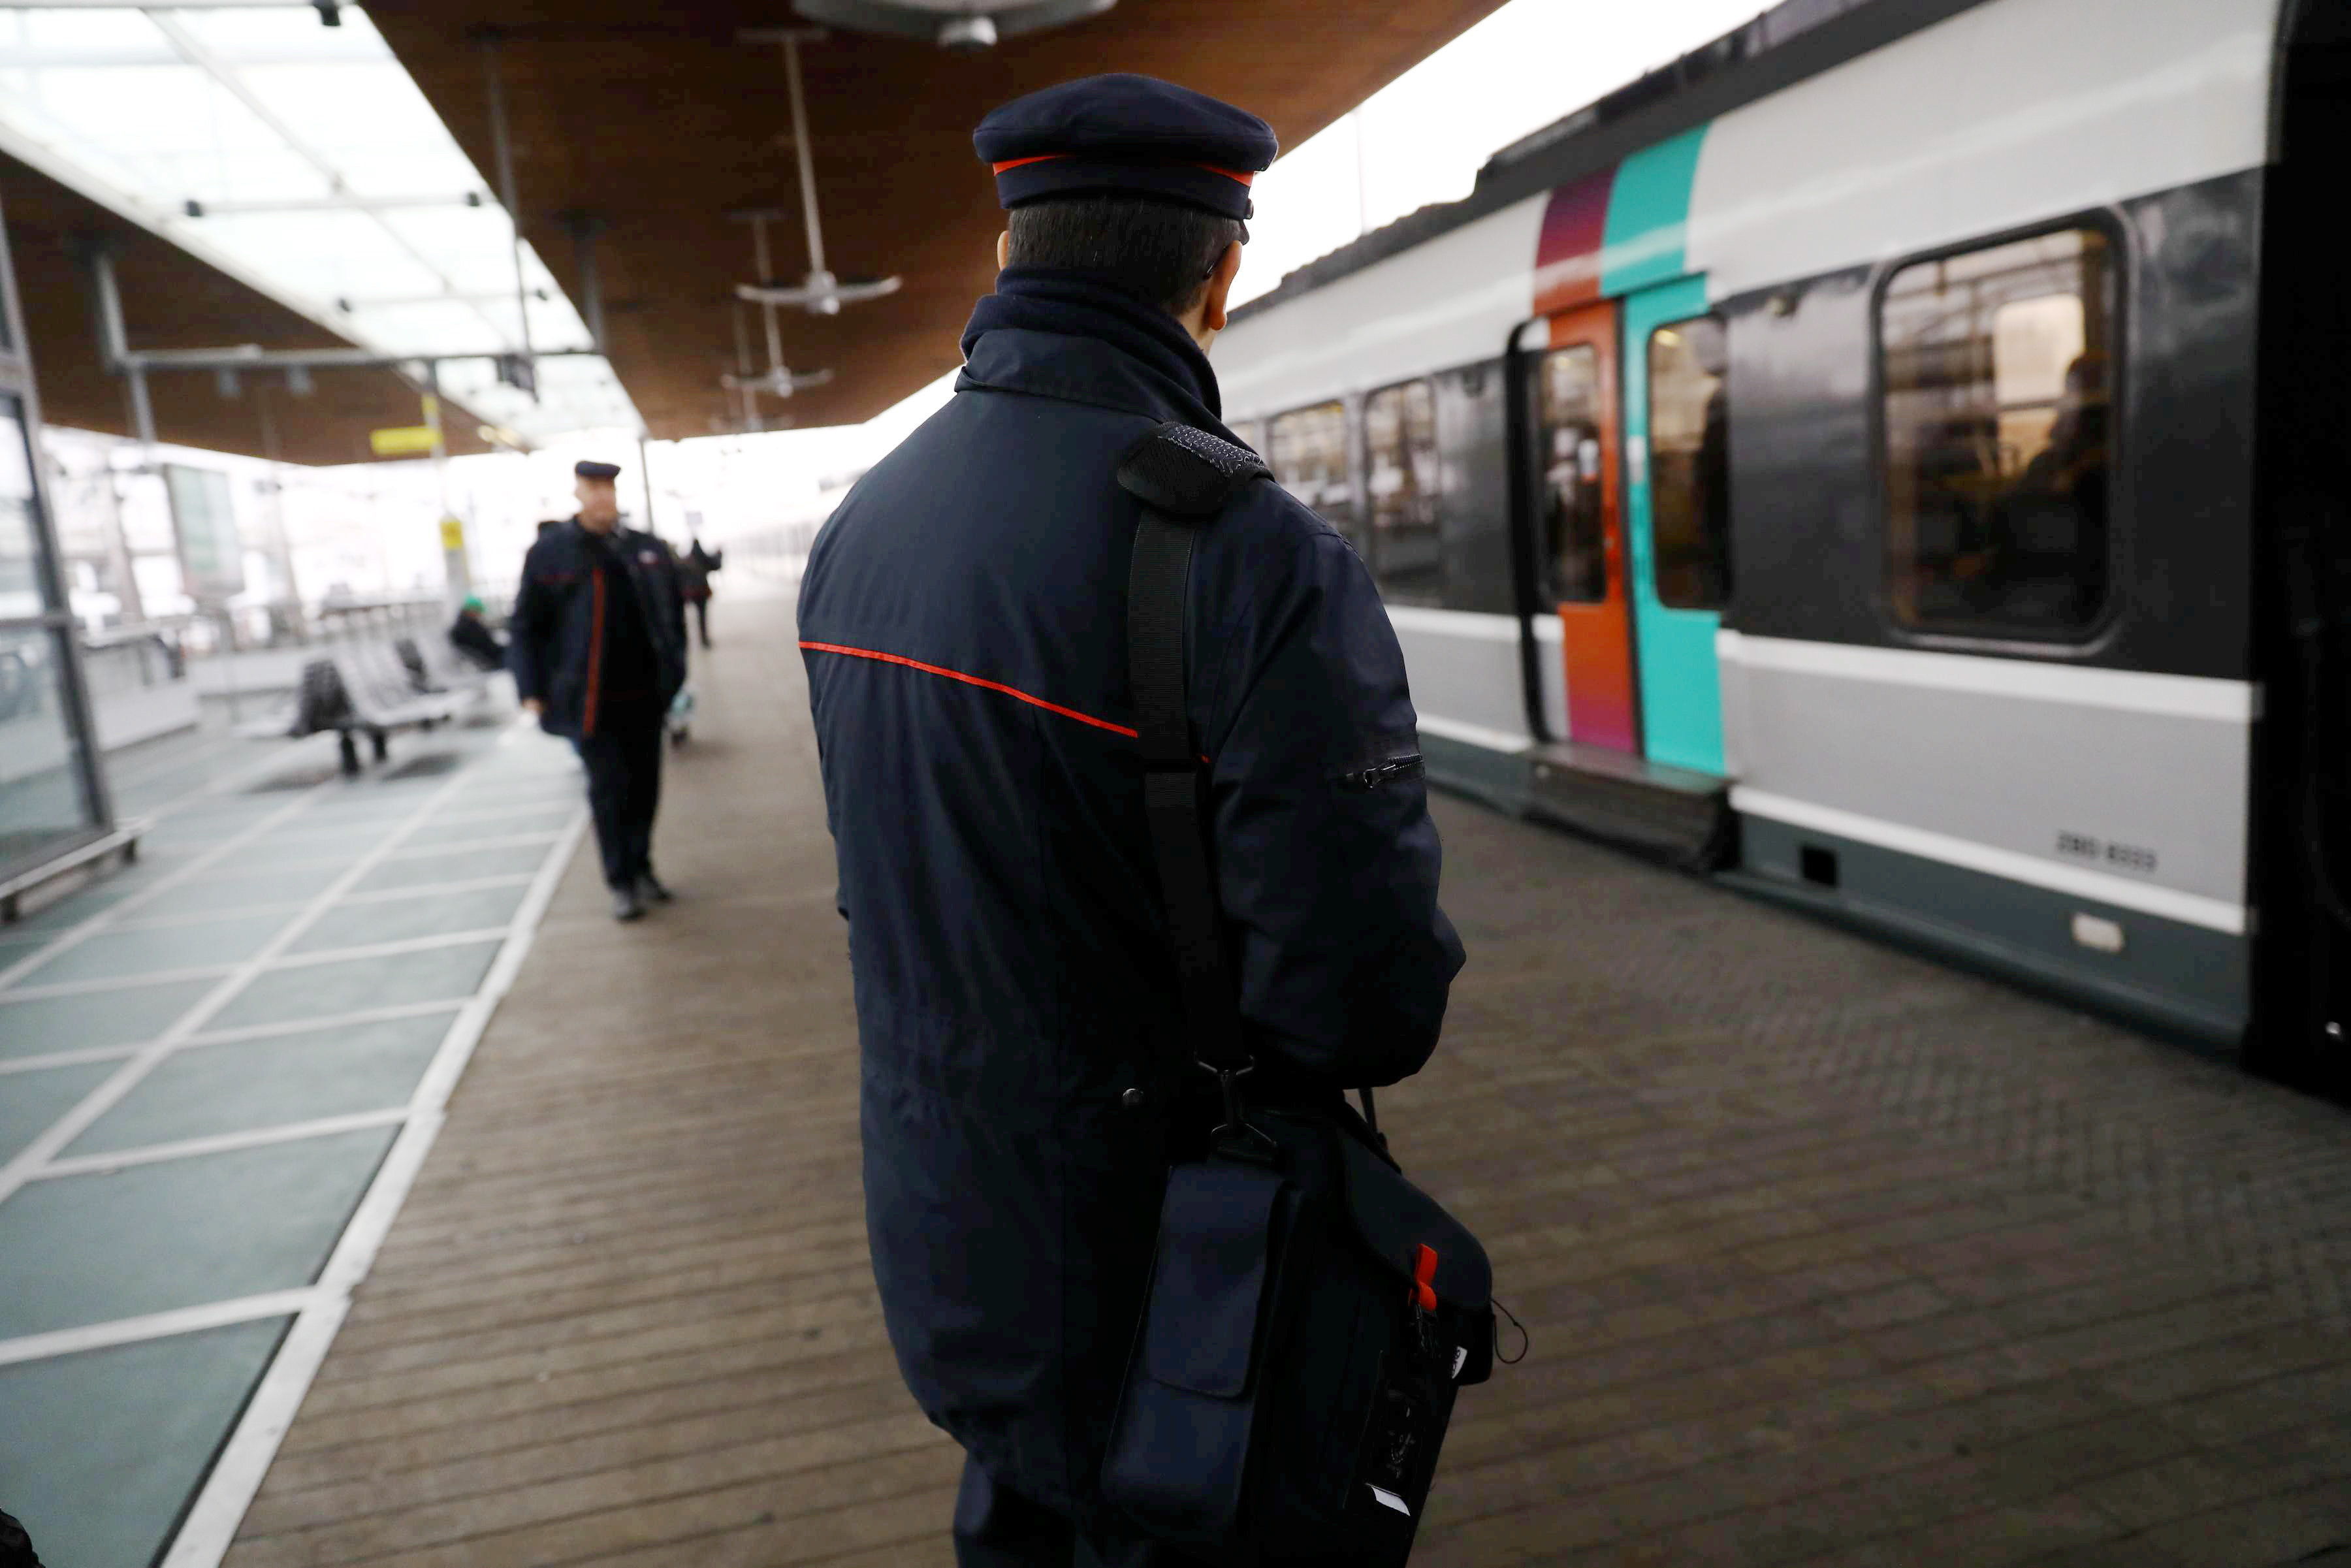 Les contrôleurs SNCF touchent une commission sur chaque amende, à condition qu’elle soit réglée sur place. D'où le zèle de certains, les primes pouvant atteindre jusqu'à quelques centaines d'euros par mois. LP/Philippe Lavieille